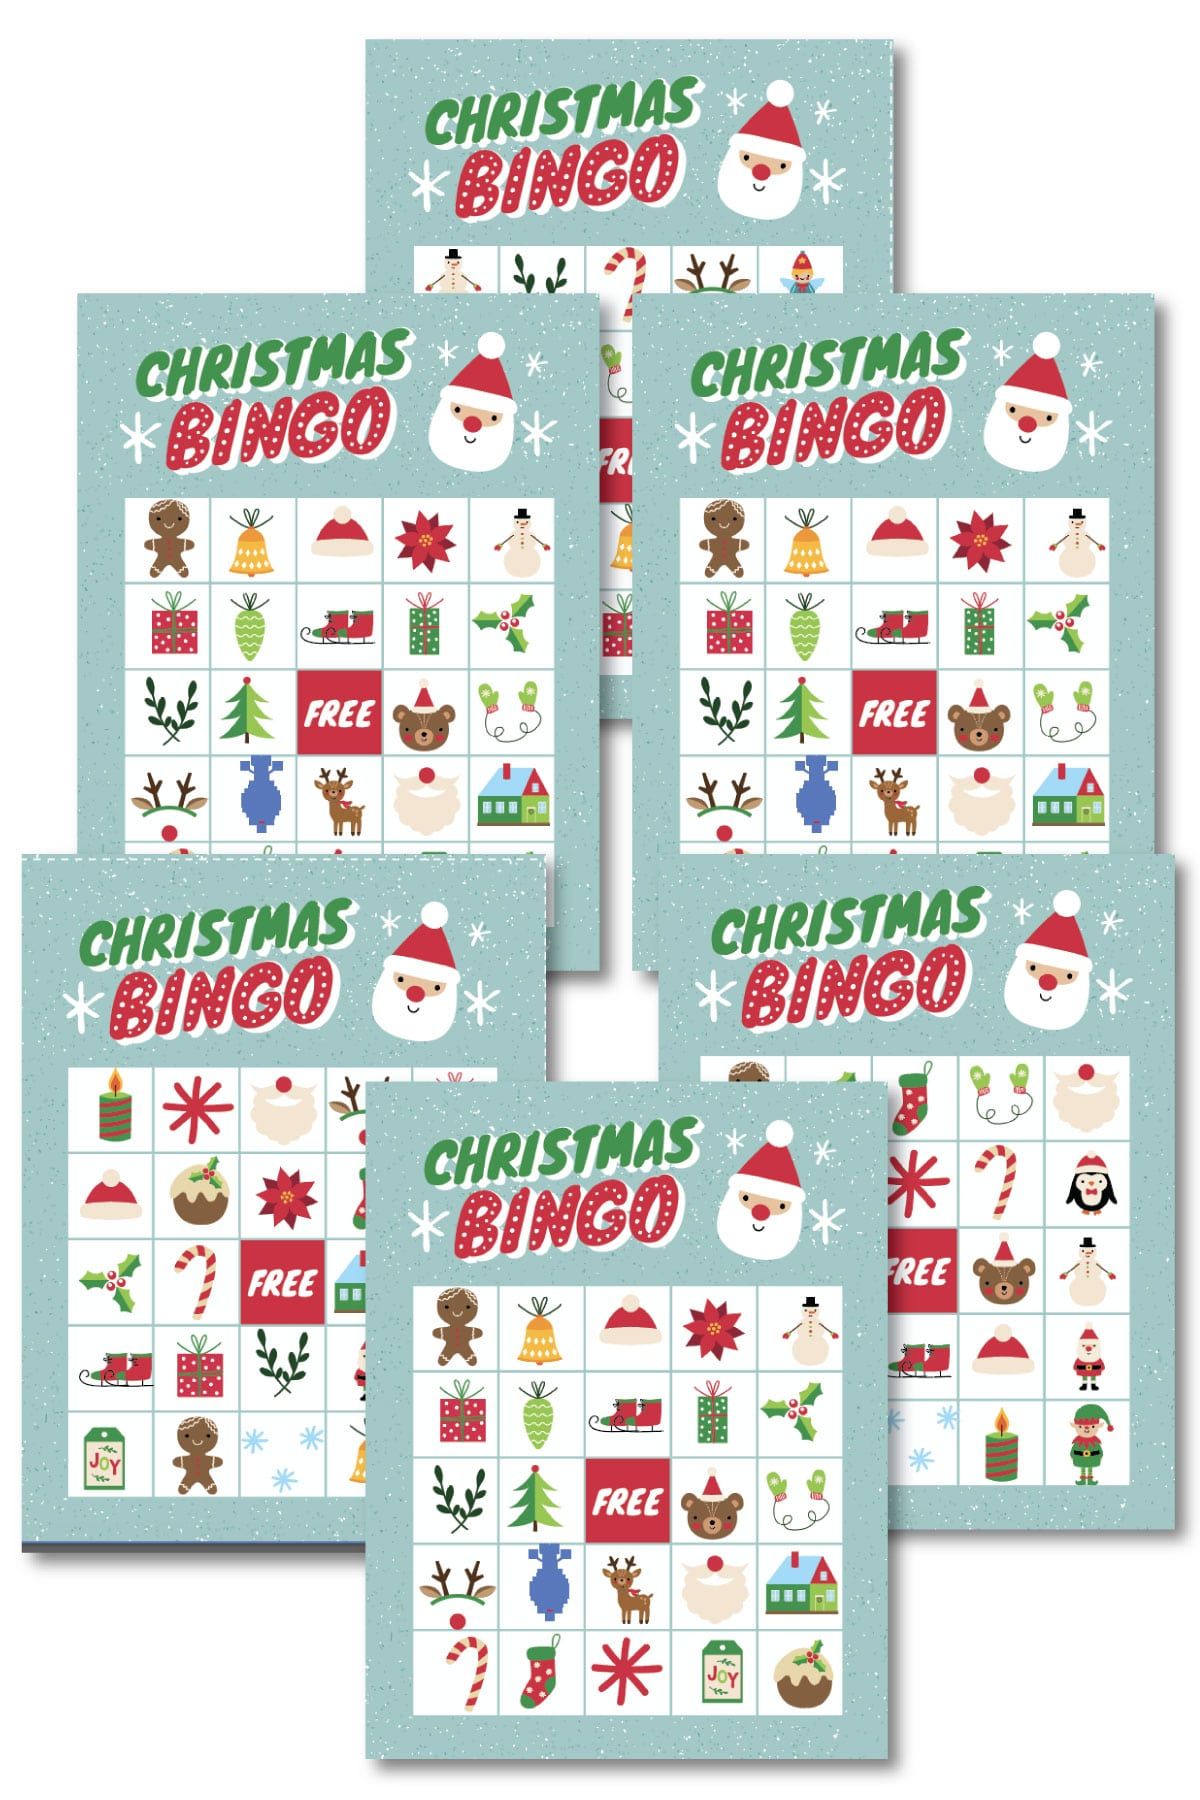 Targetes de bingo de Nadal en una pila